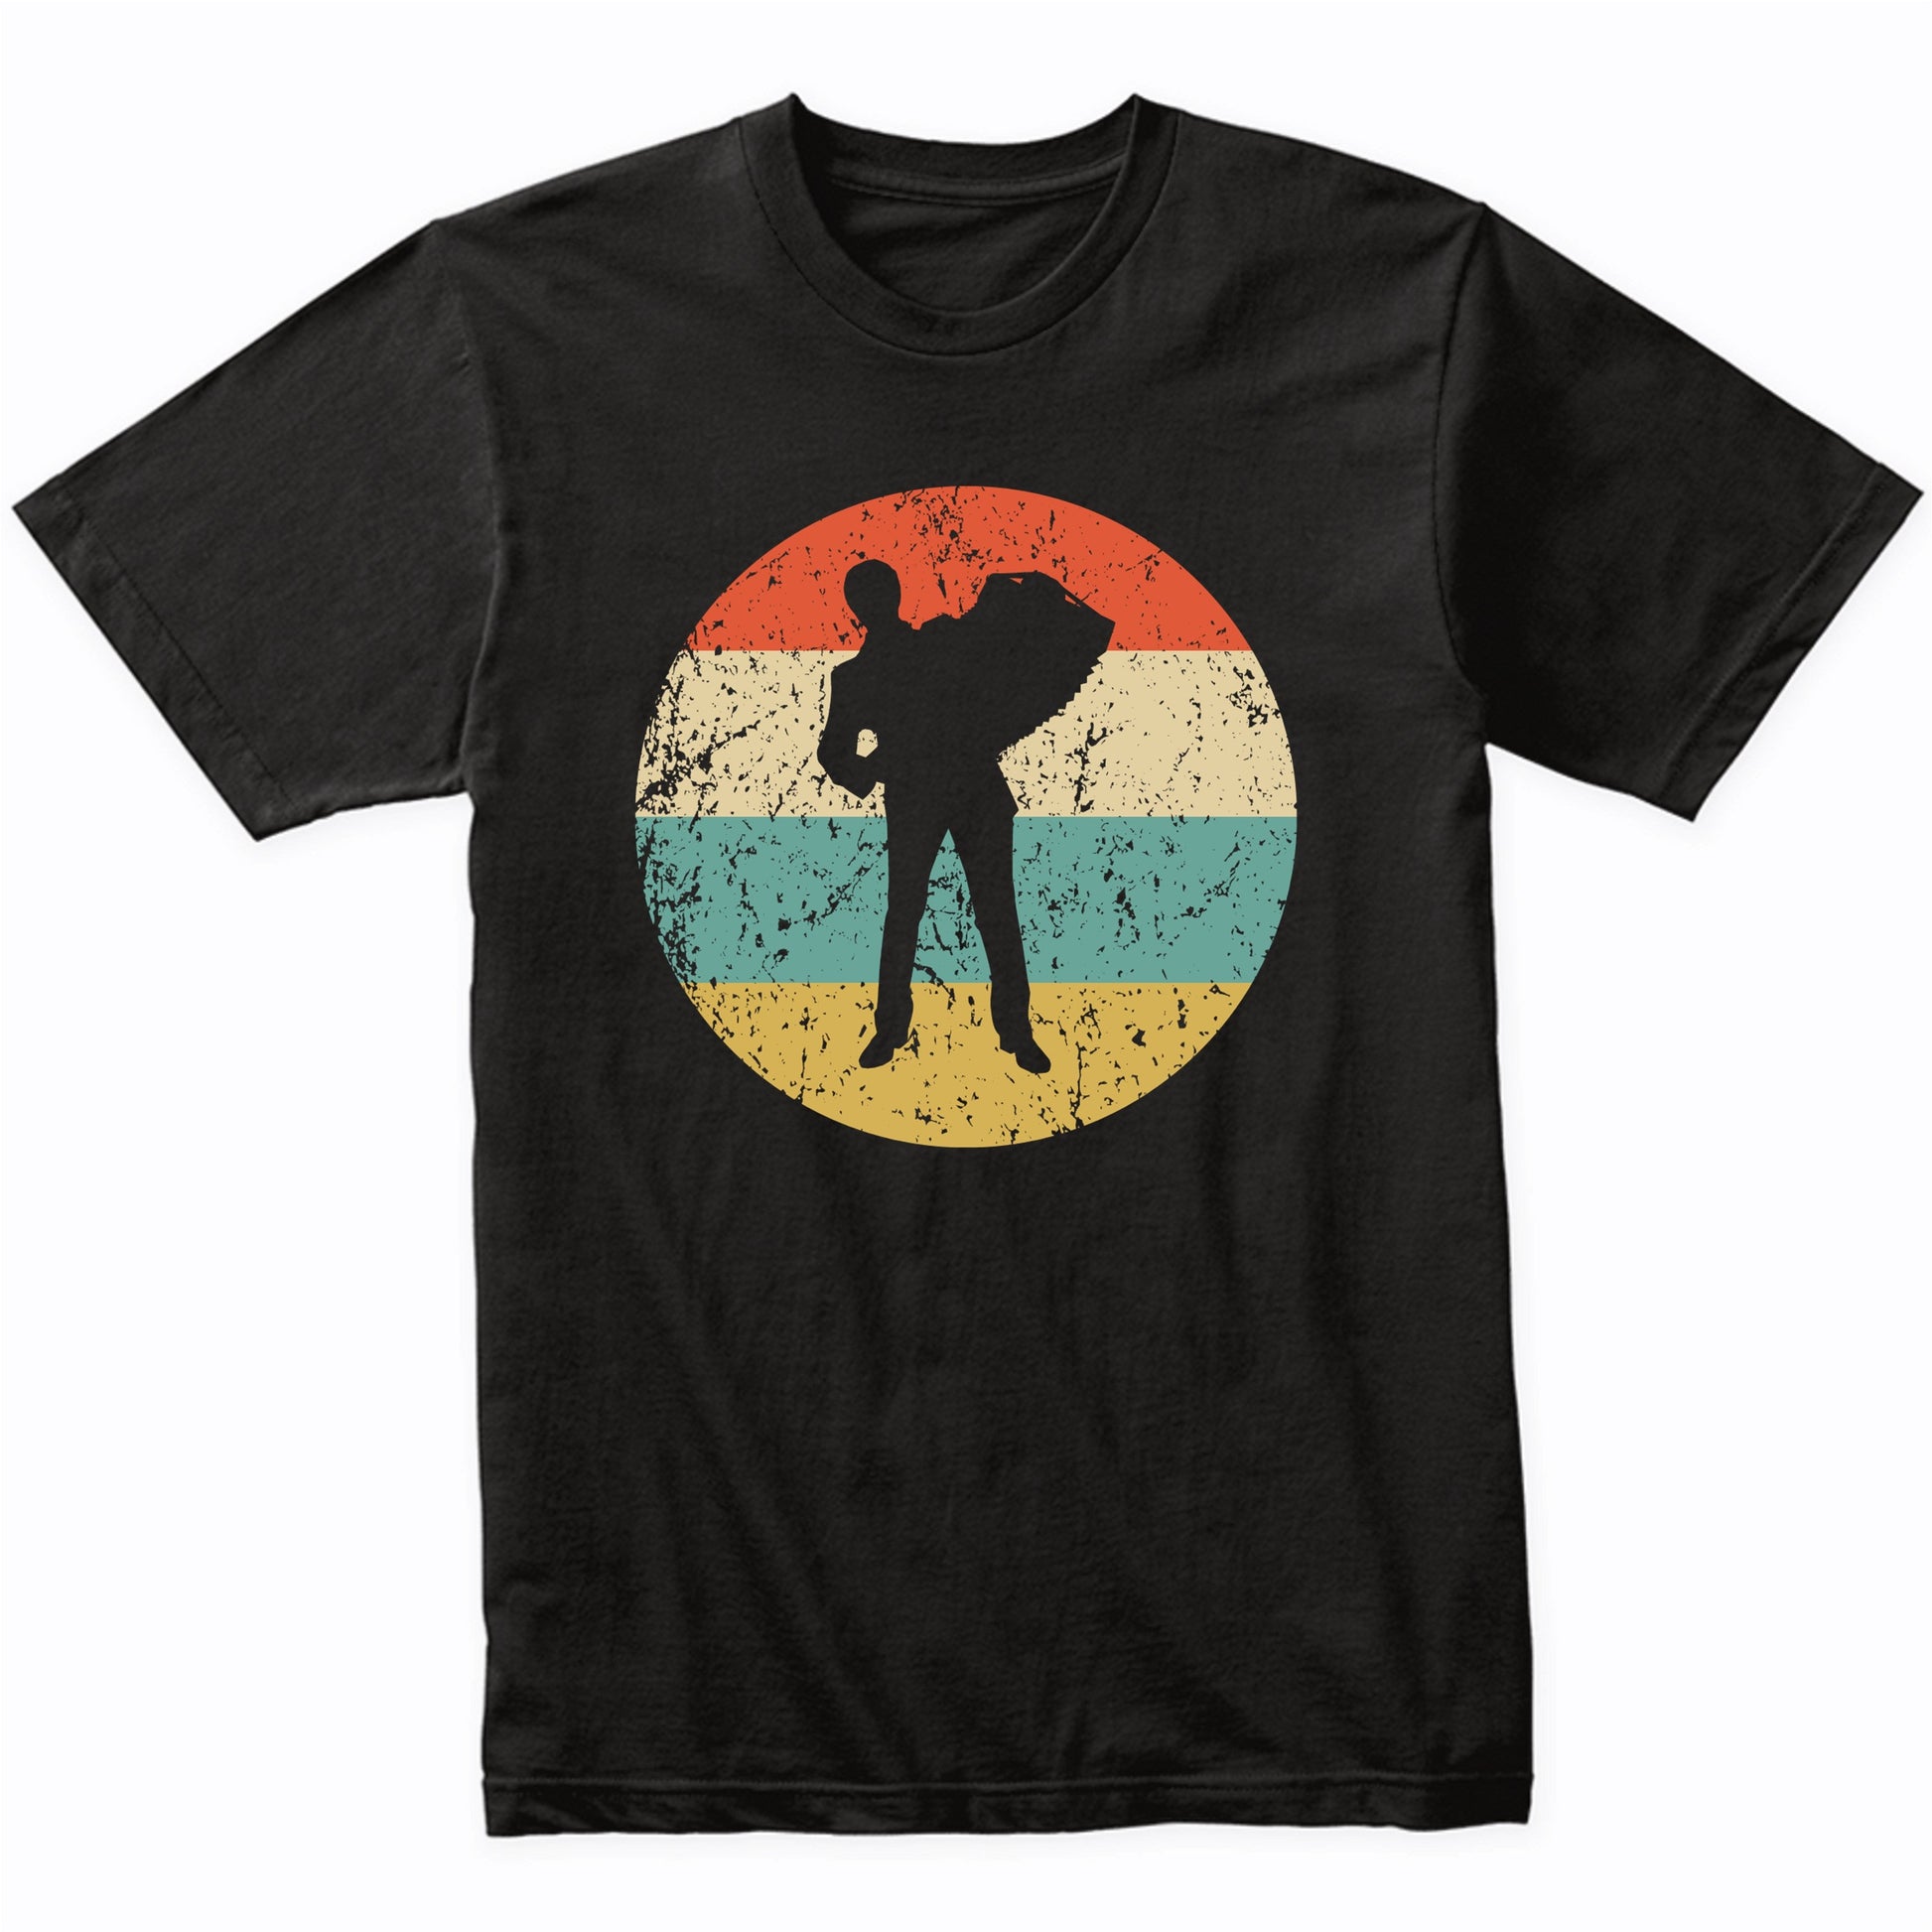 Accordion Shirt - Vintage Retro Music T-Shirt